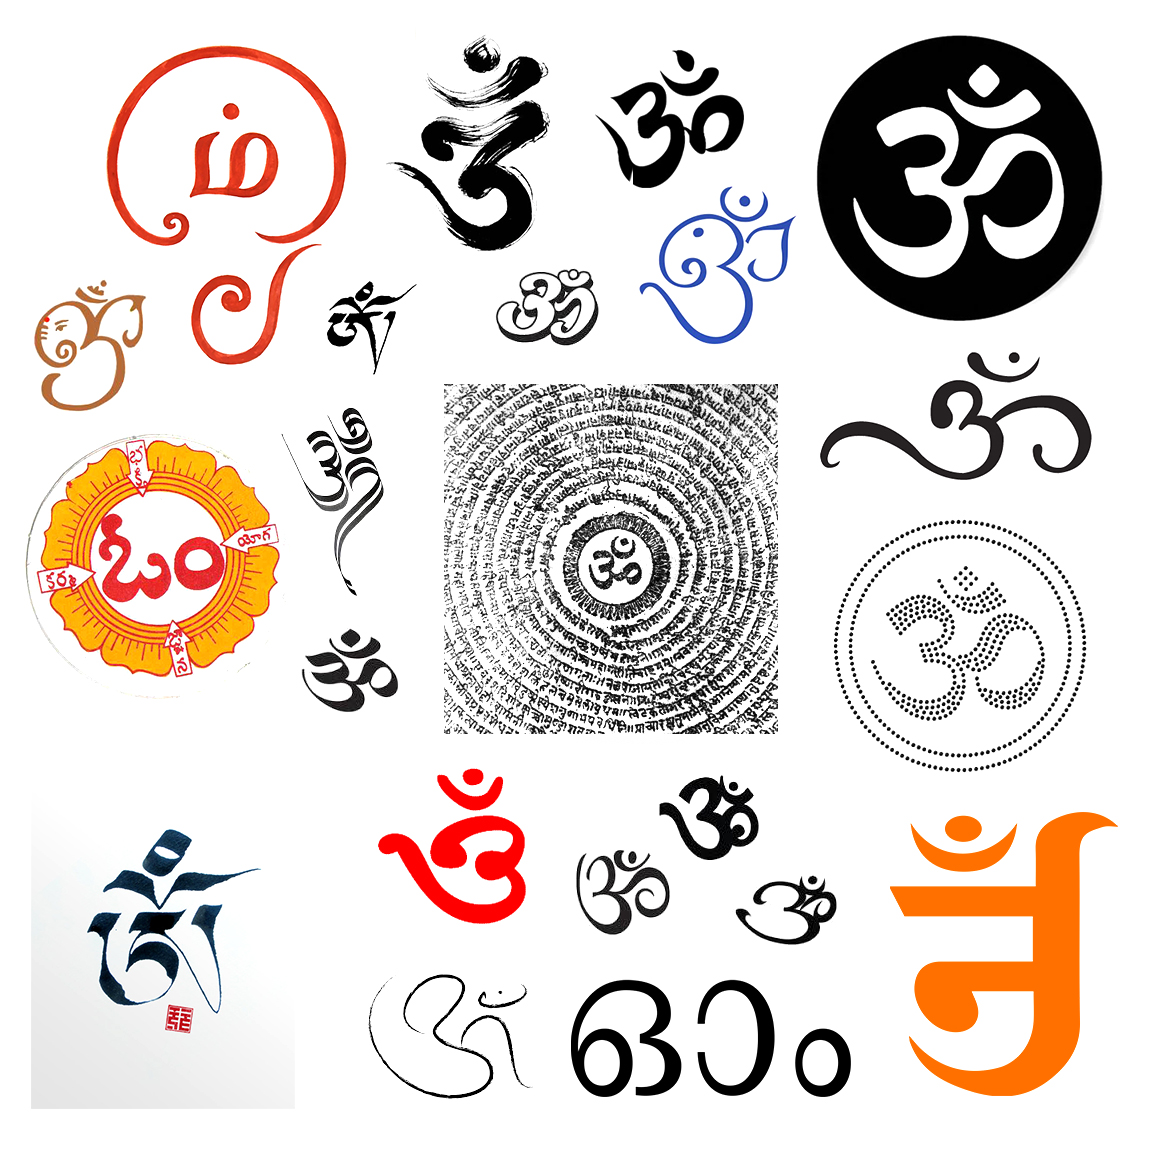 Om Aum symbol Hindu